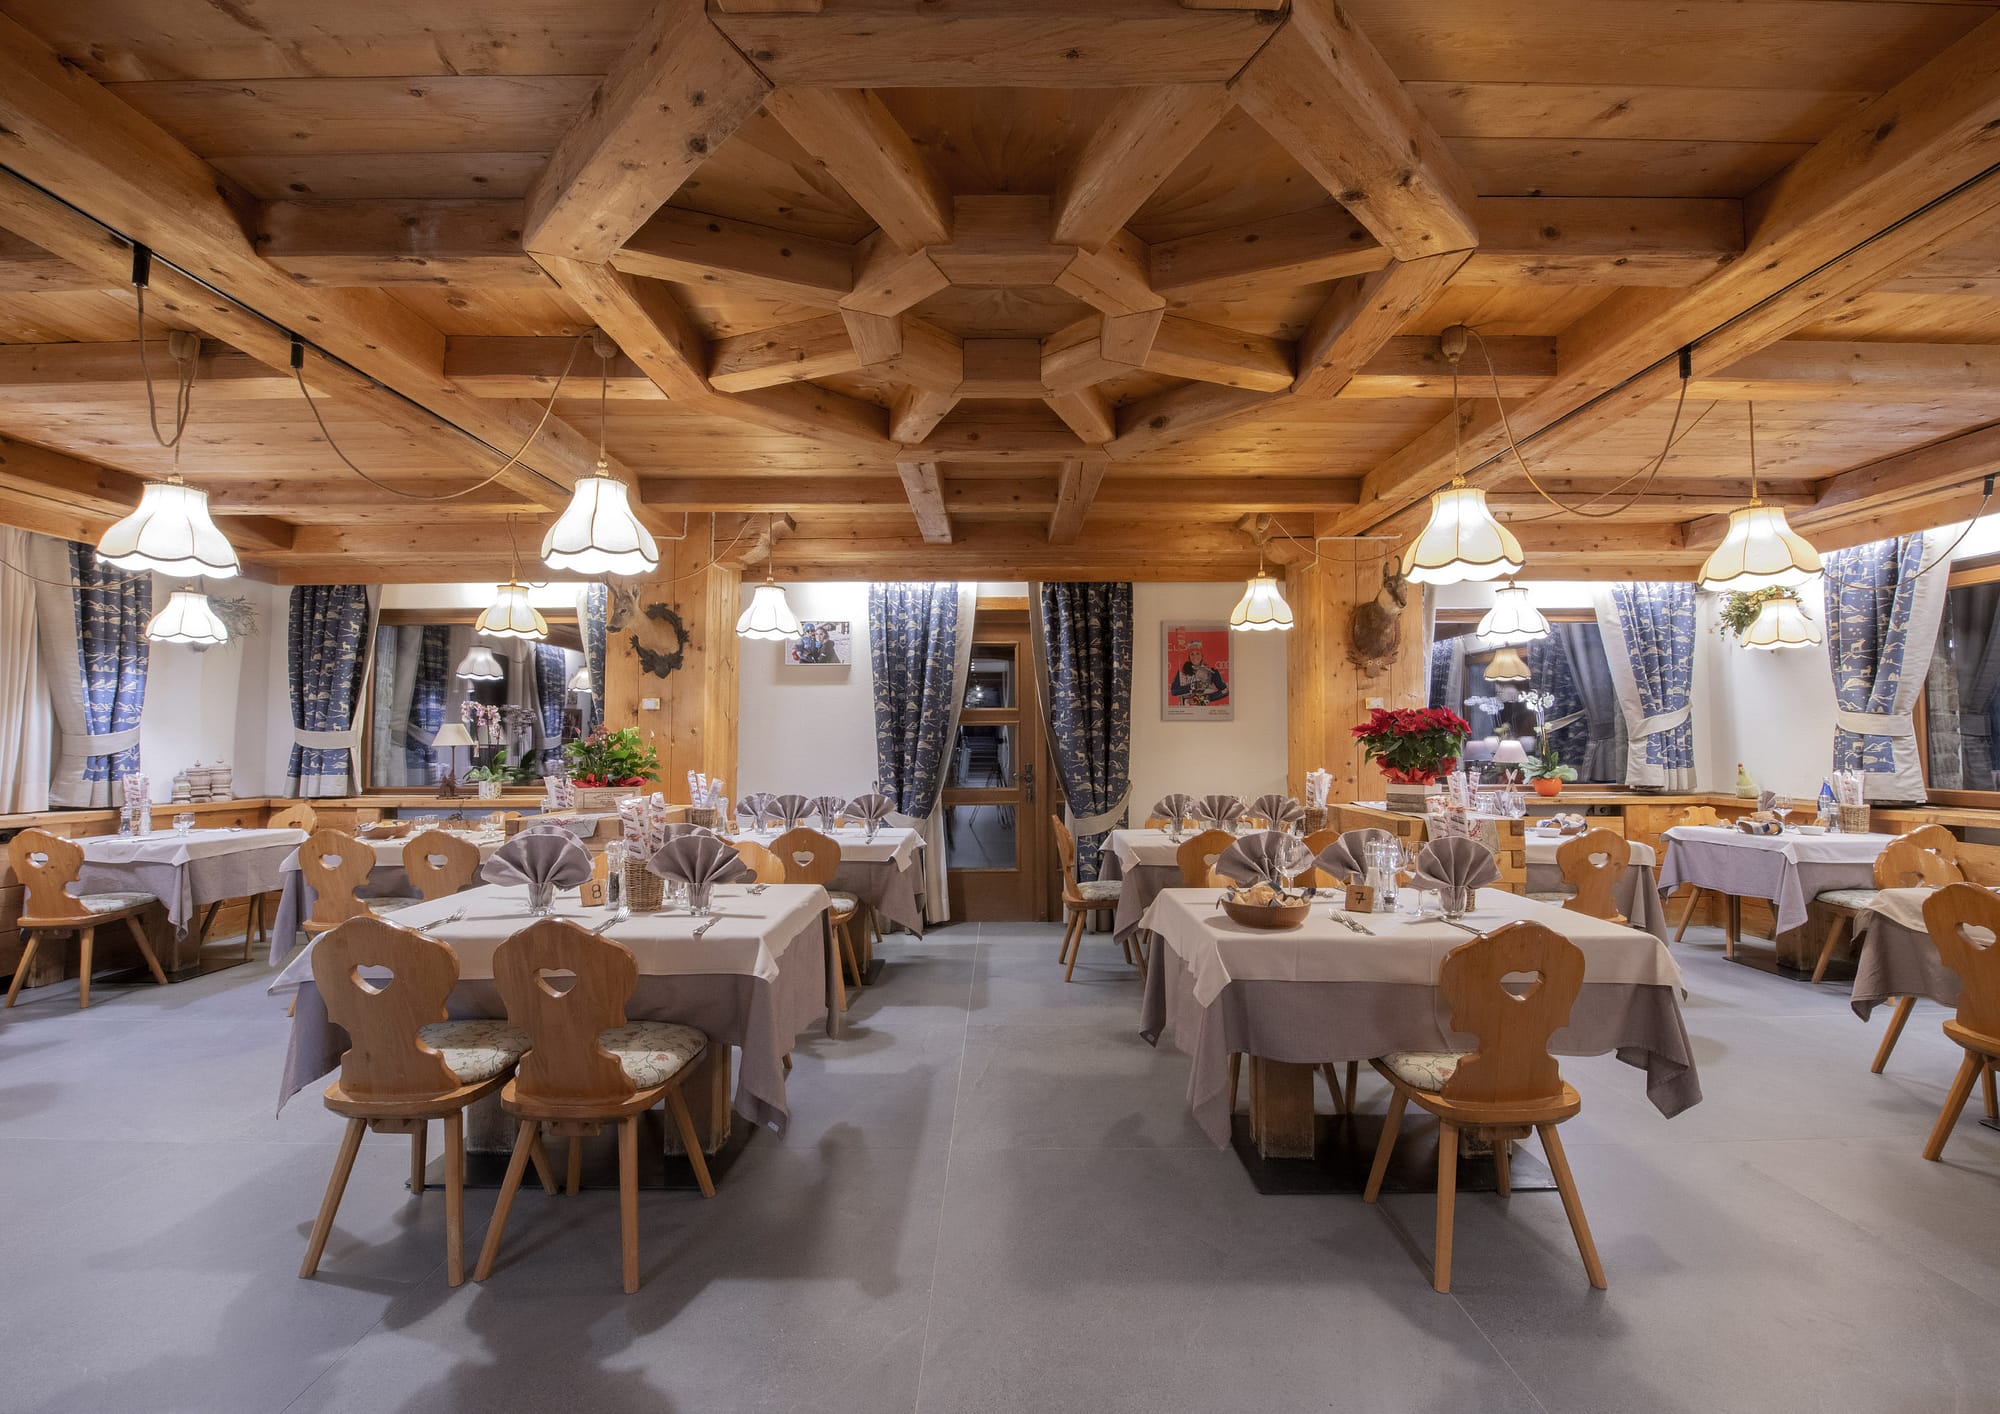 Hotel Rascard, sala ristorante con soffitto con grandi travature in legno